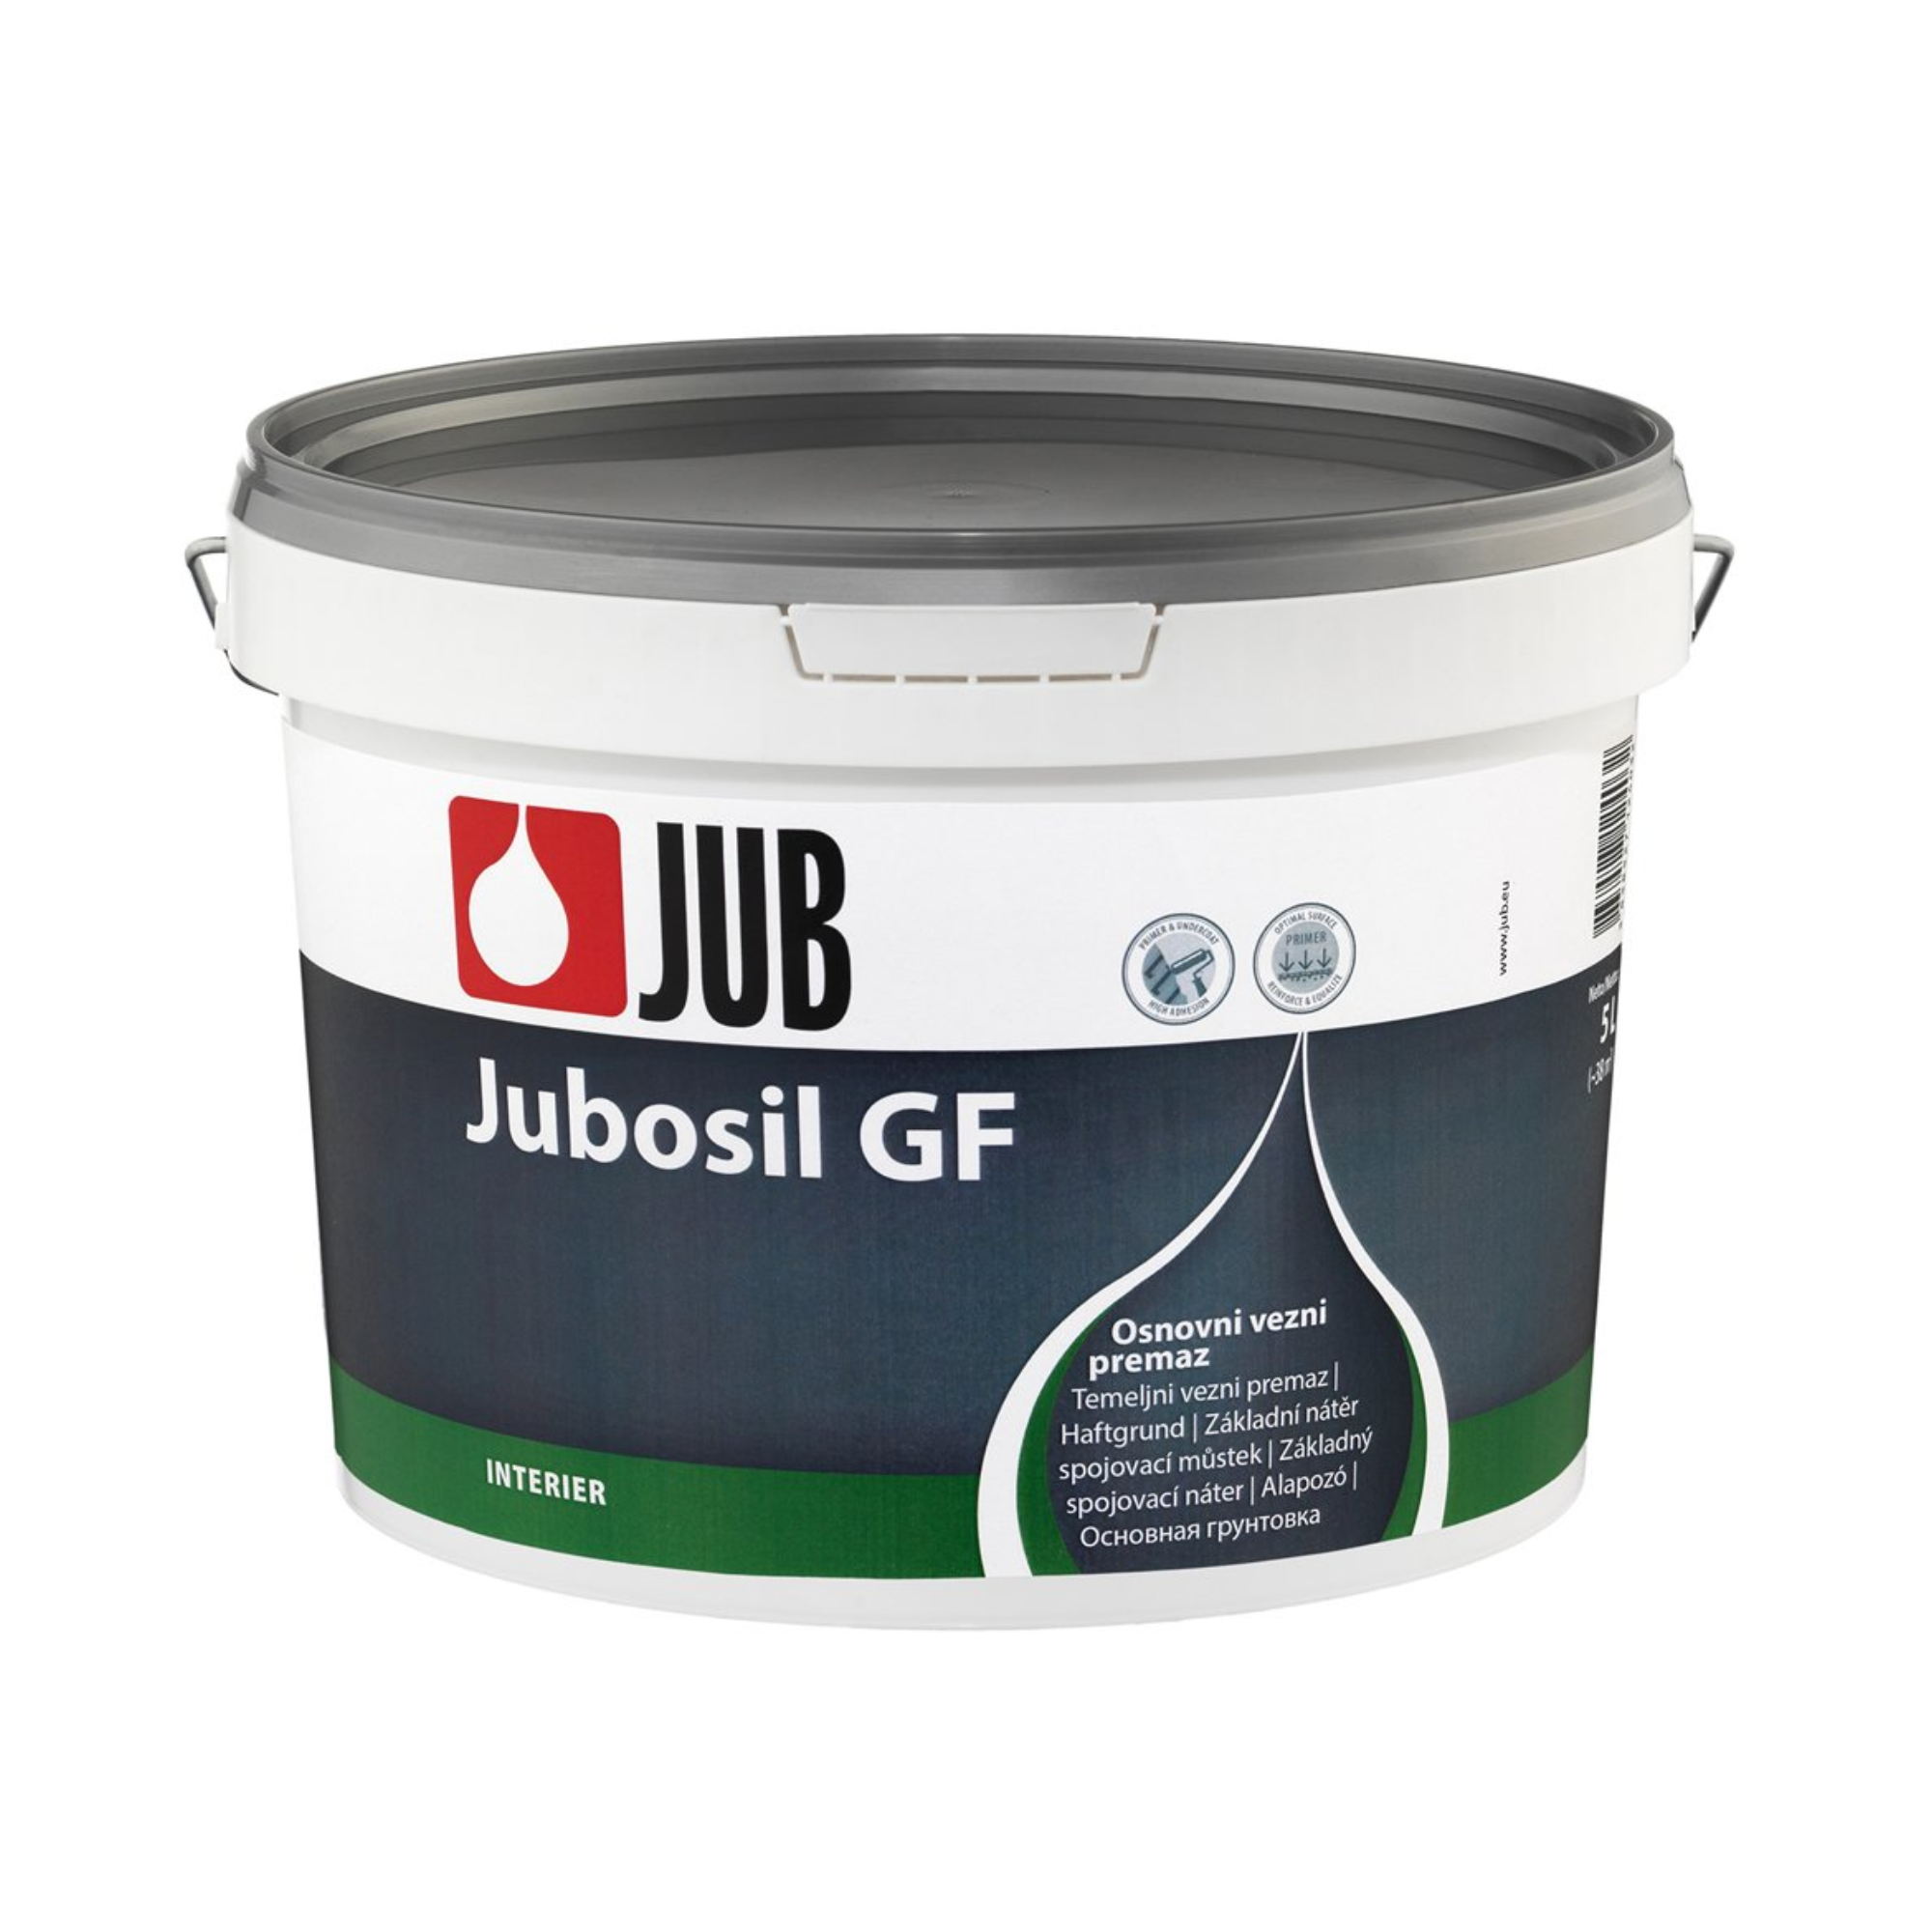 JUB JUBOSIL GF základný spojovací krycí náter 5 l